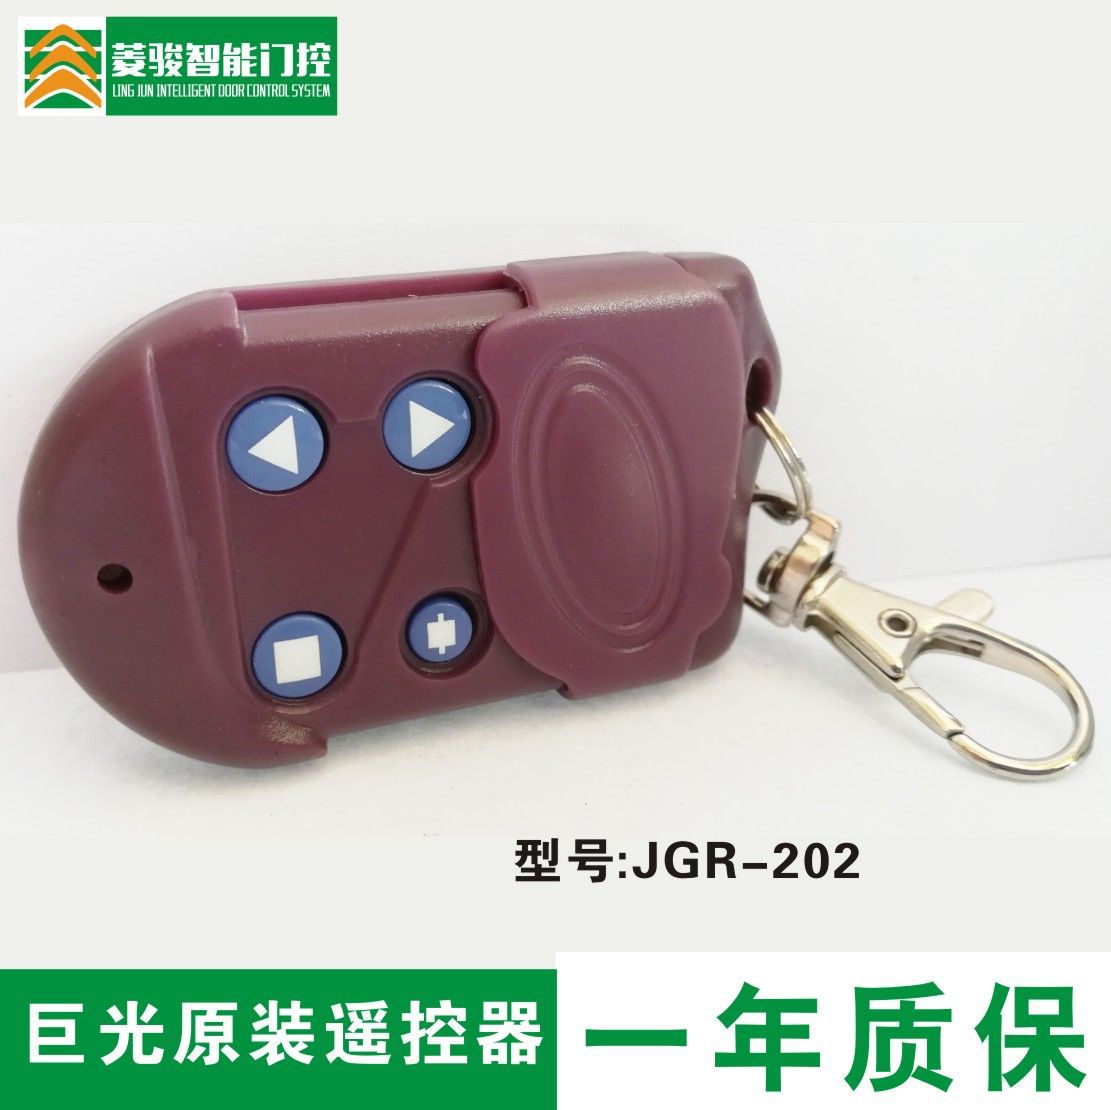 台湾巨光遥控器 电动门遥控 卷闸门遥控 管状遥控器JGR-202发射器，远程便捷控制门禁